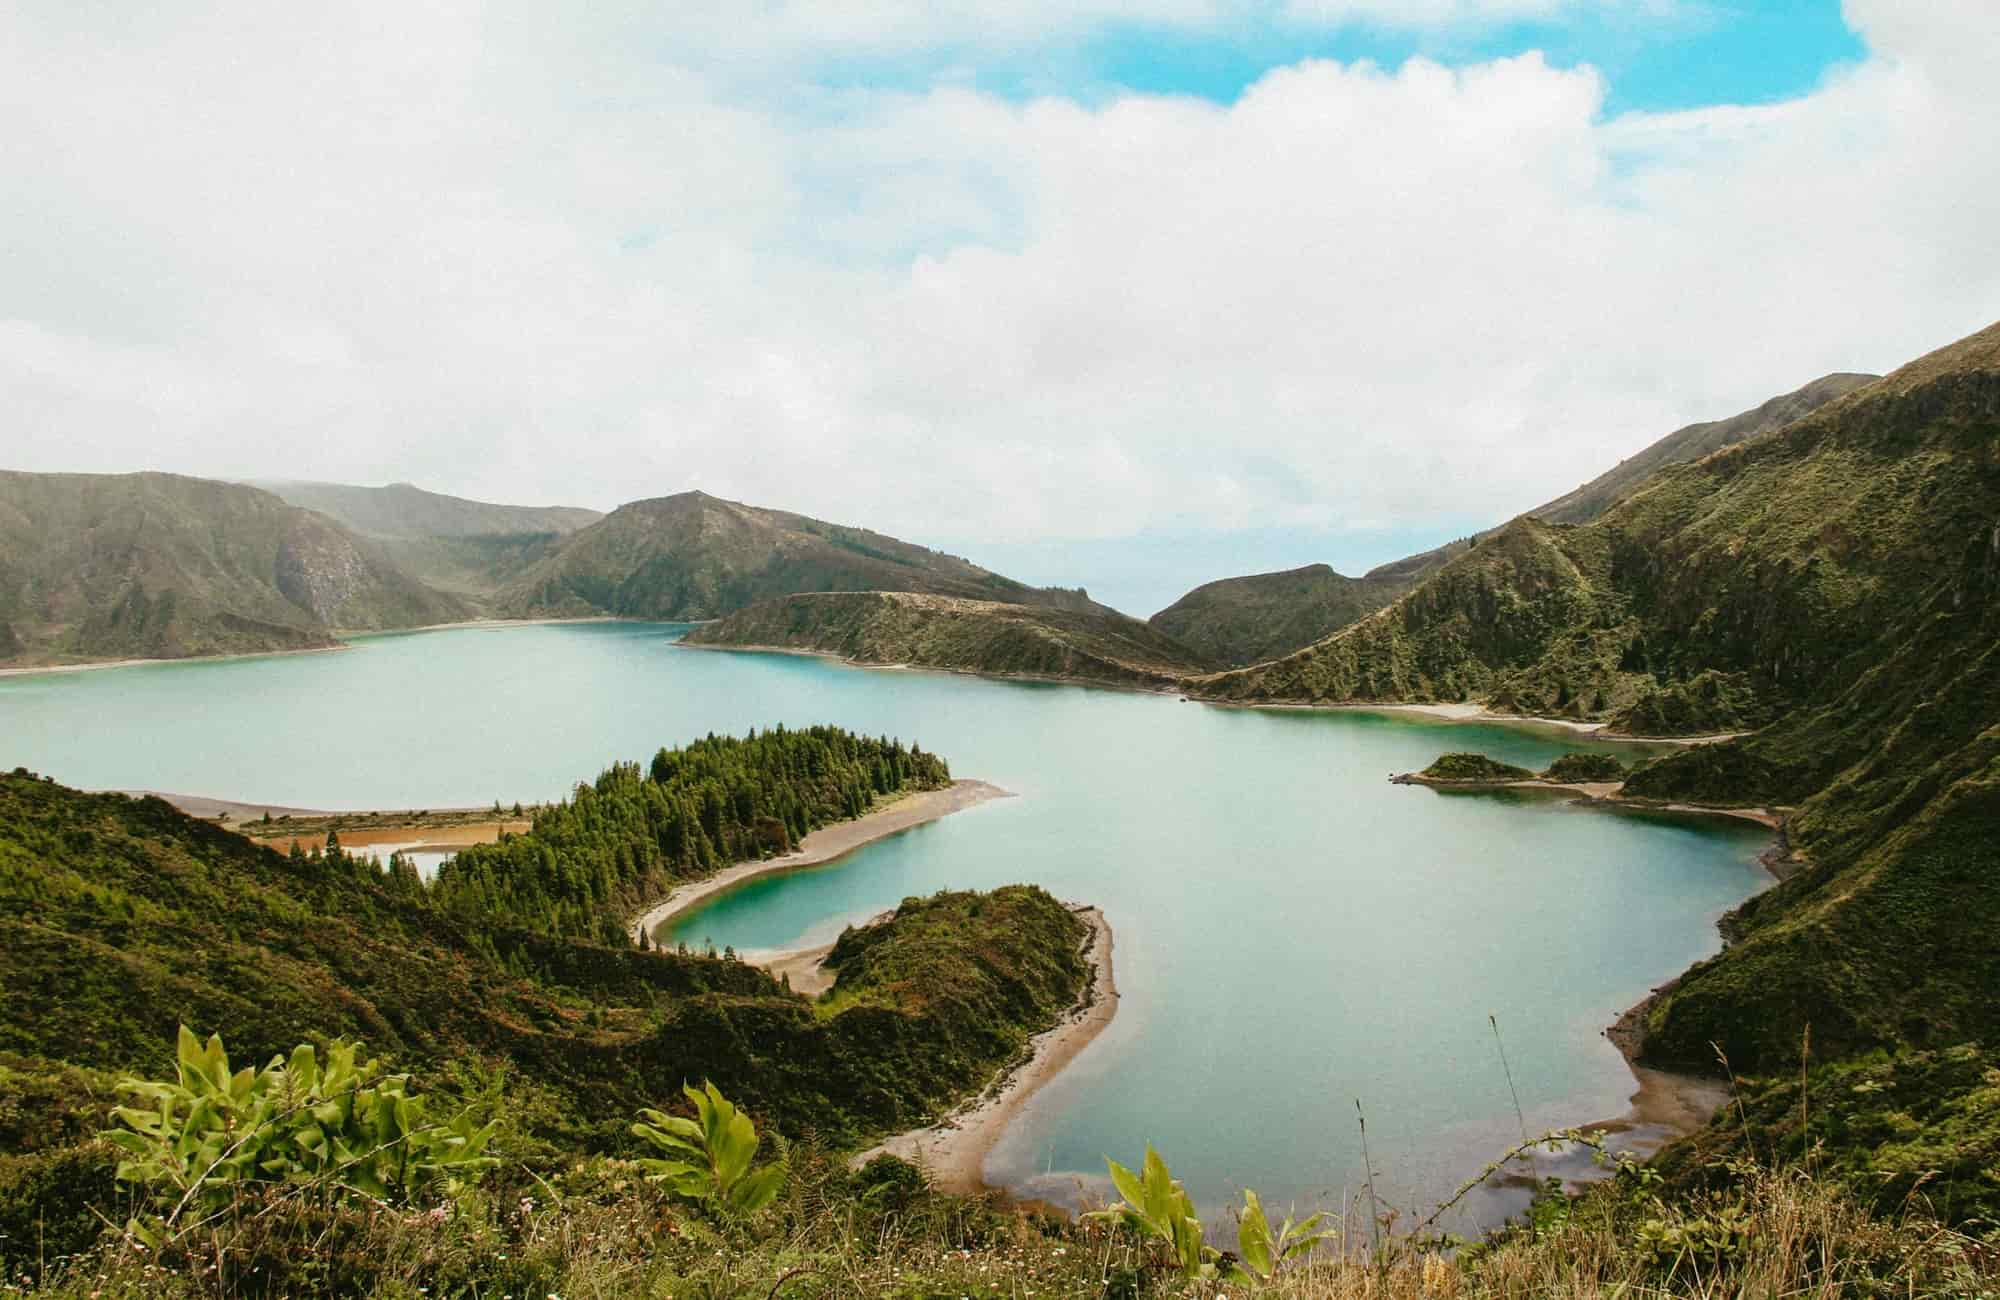 Voyage Açores - Lagoa do Fogo - São Miguel - Amplitudes